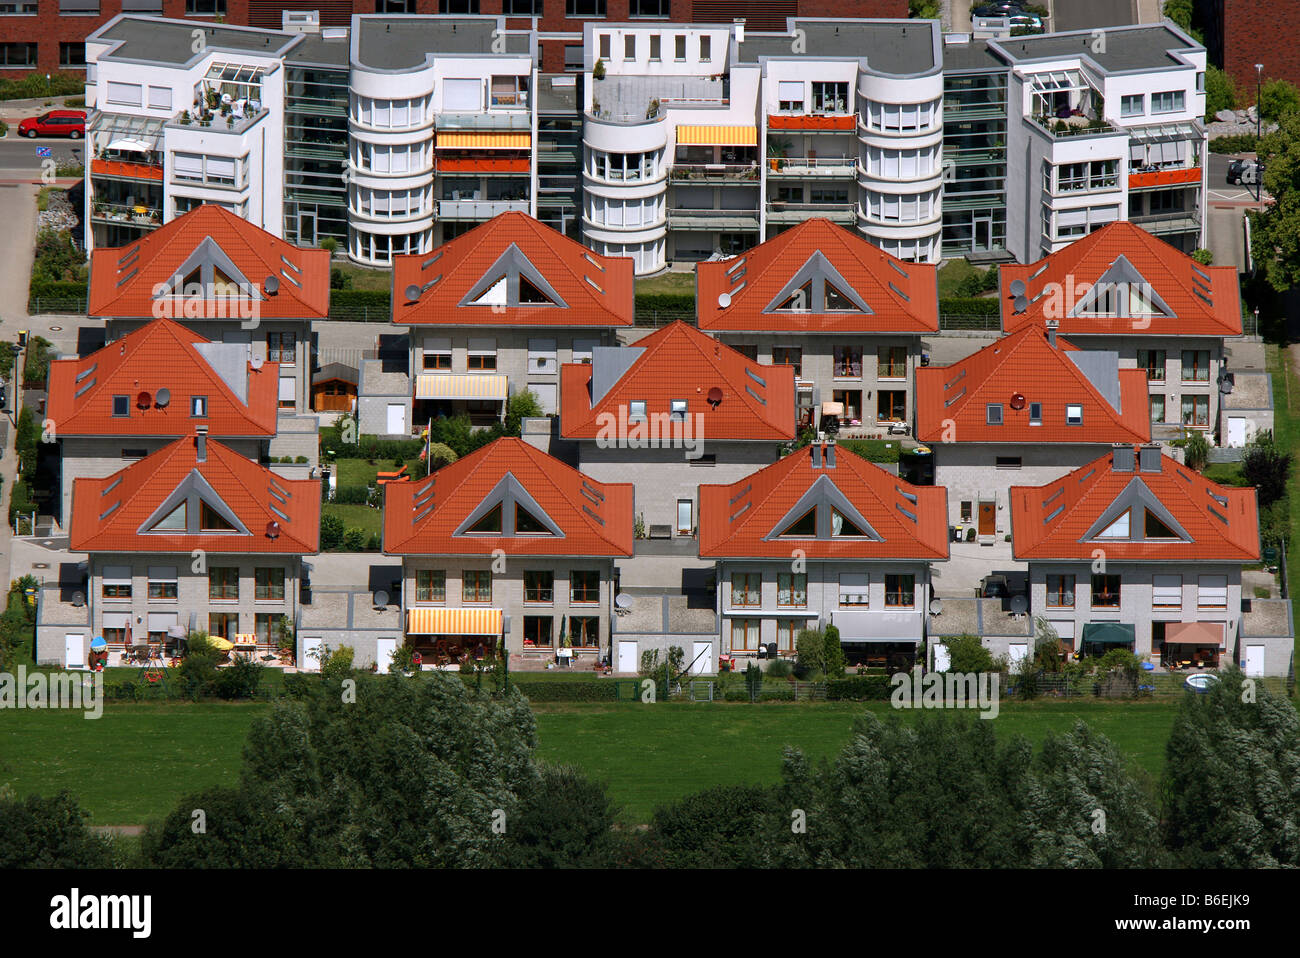 Vue aérienne d'affaires Stadtkrone Os dans lequel se trouvent, Stockholmer Allee, housing estate, maisons individuelles, maison mitoyenne, Dortmund, Rhénanie-N-W Banque D'Images